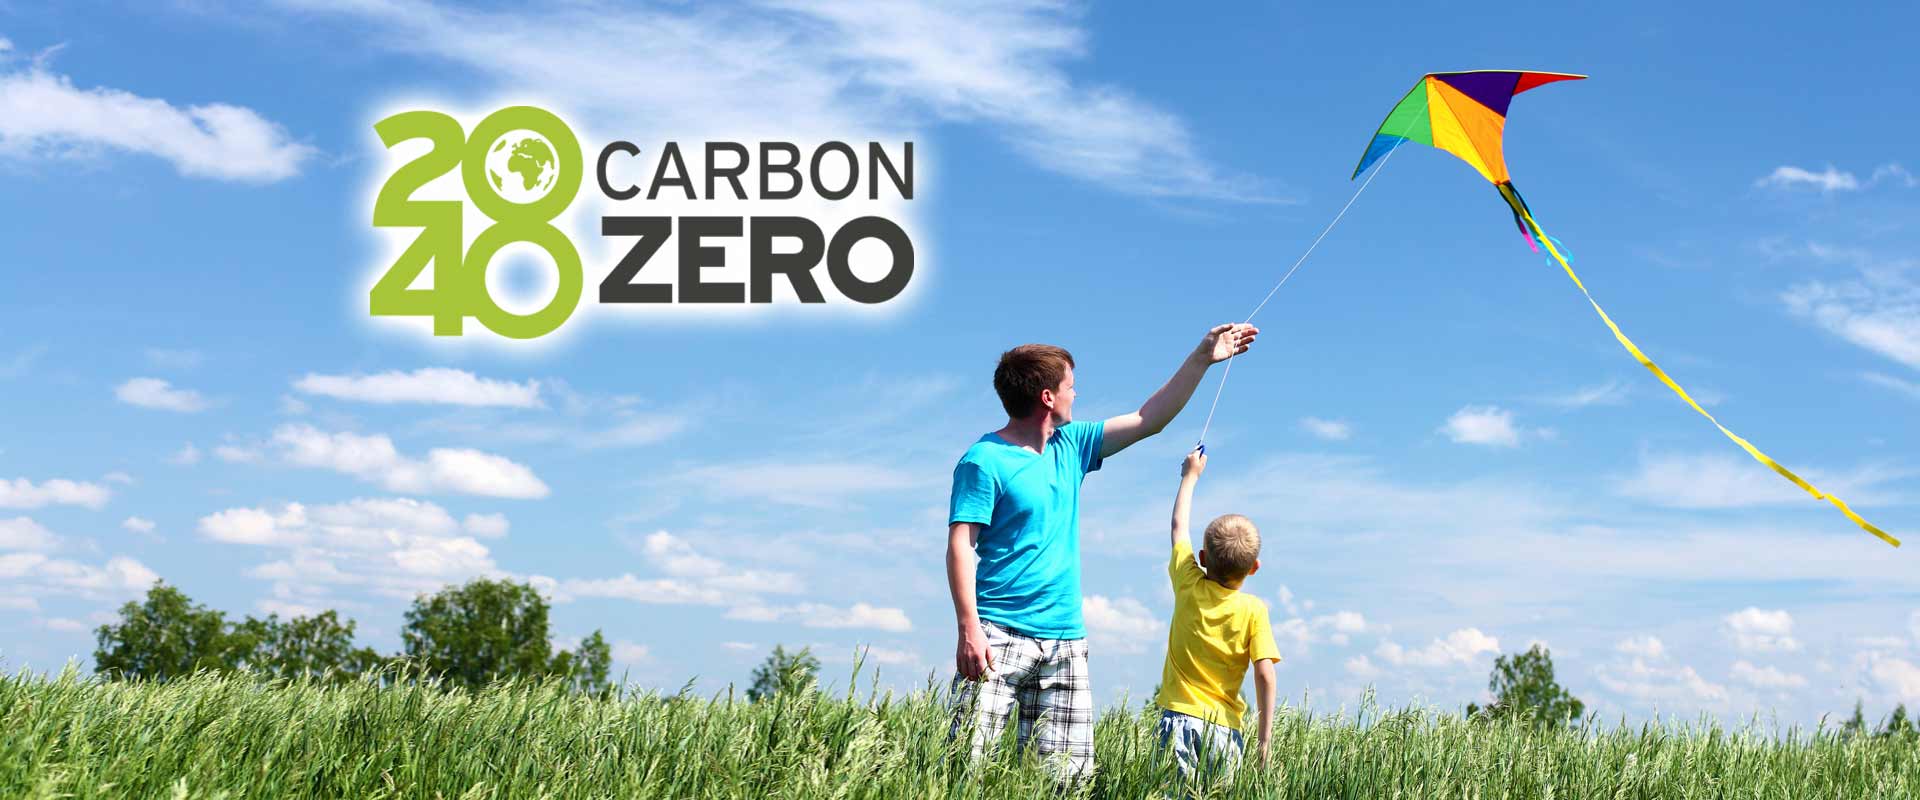 Wernick Carbon Zero 2040